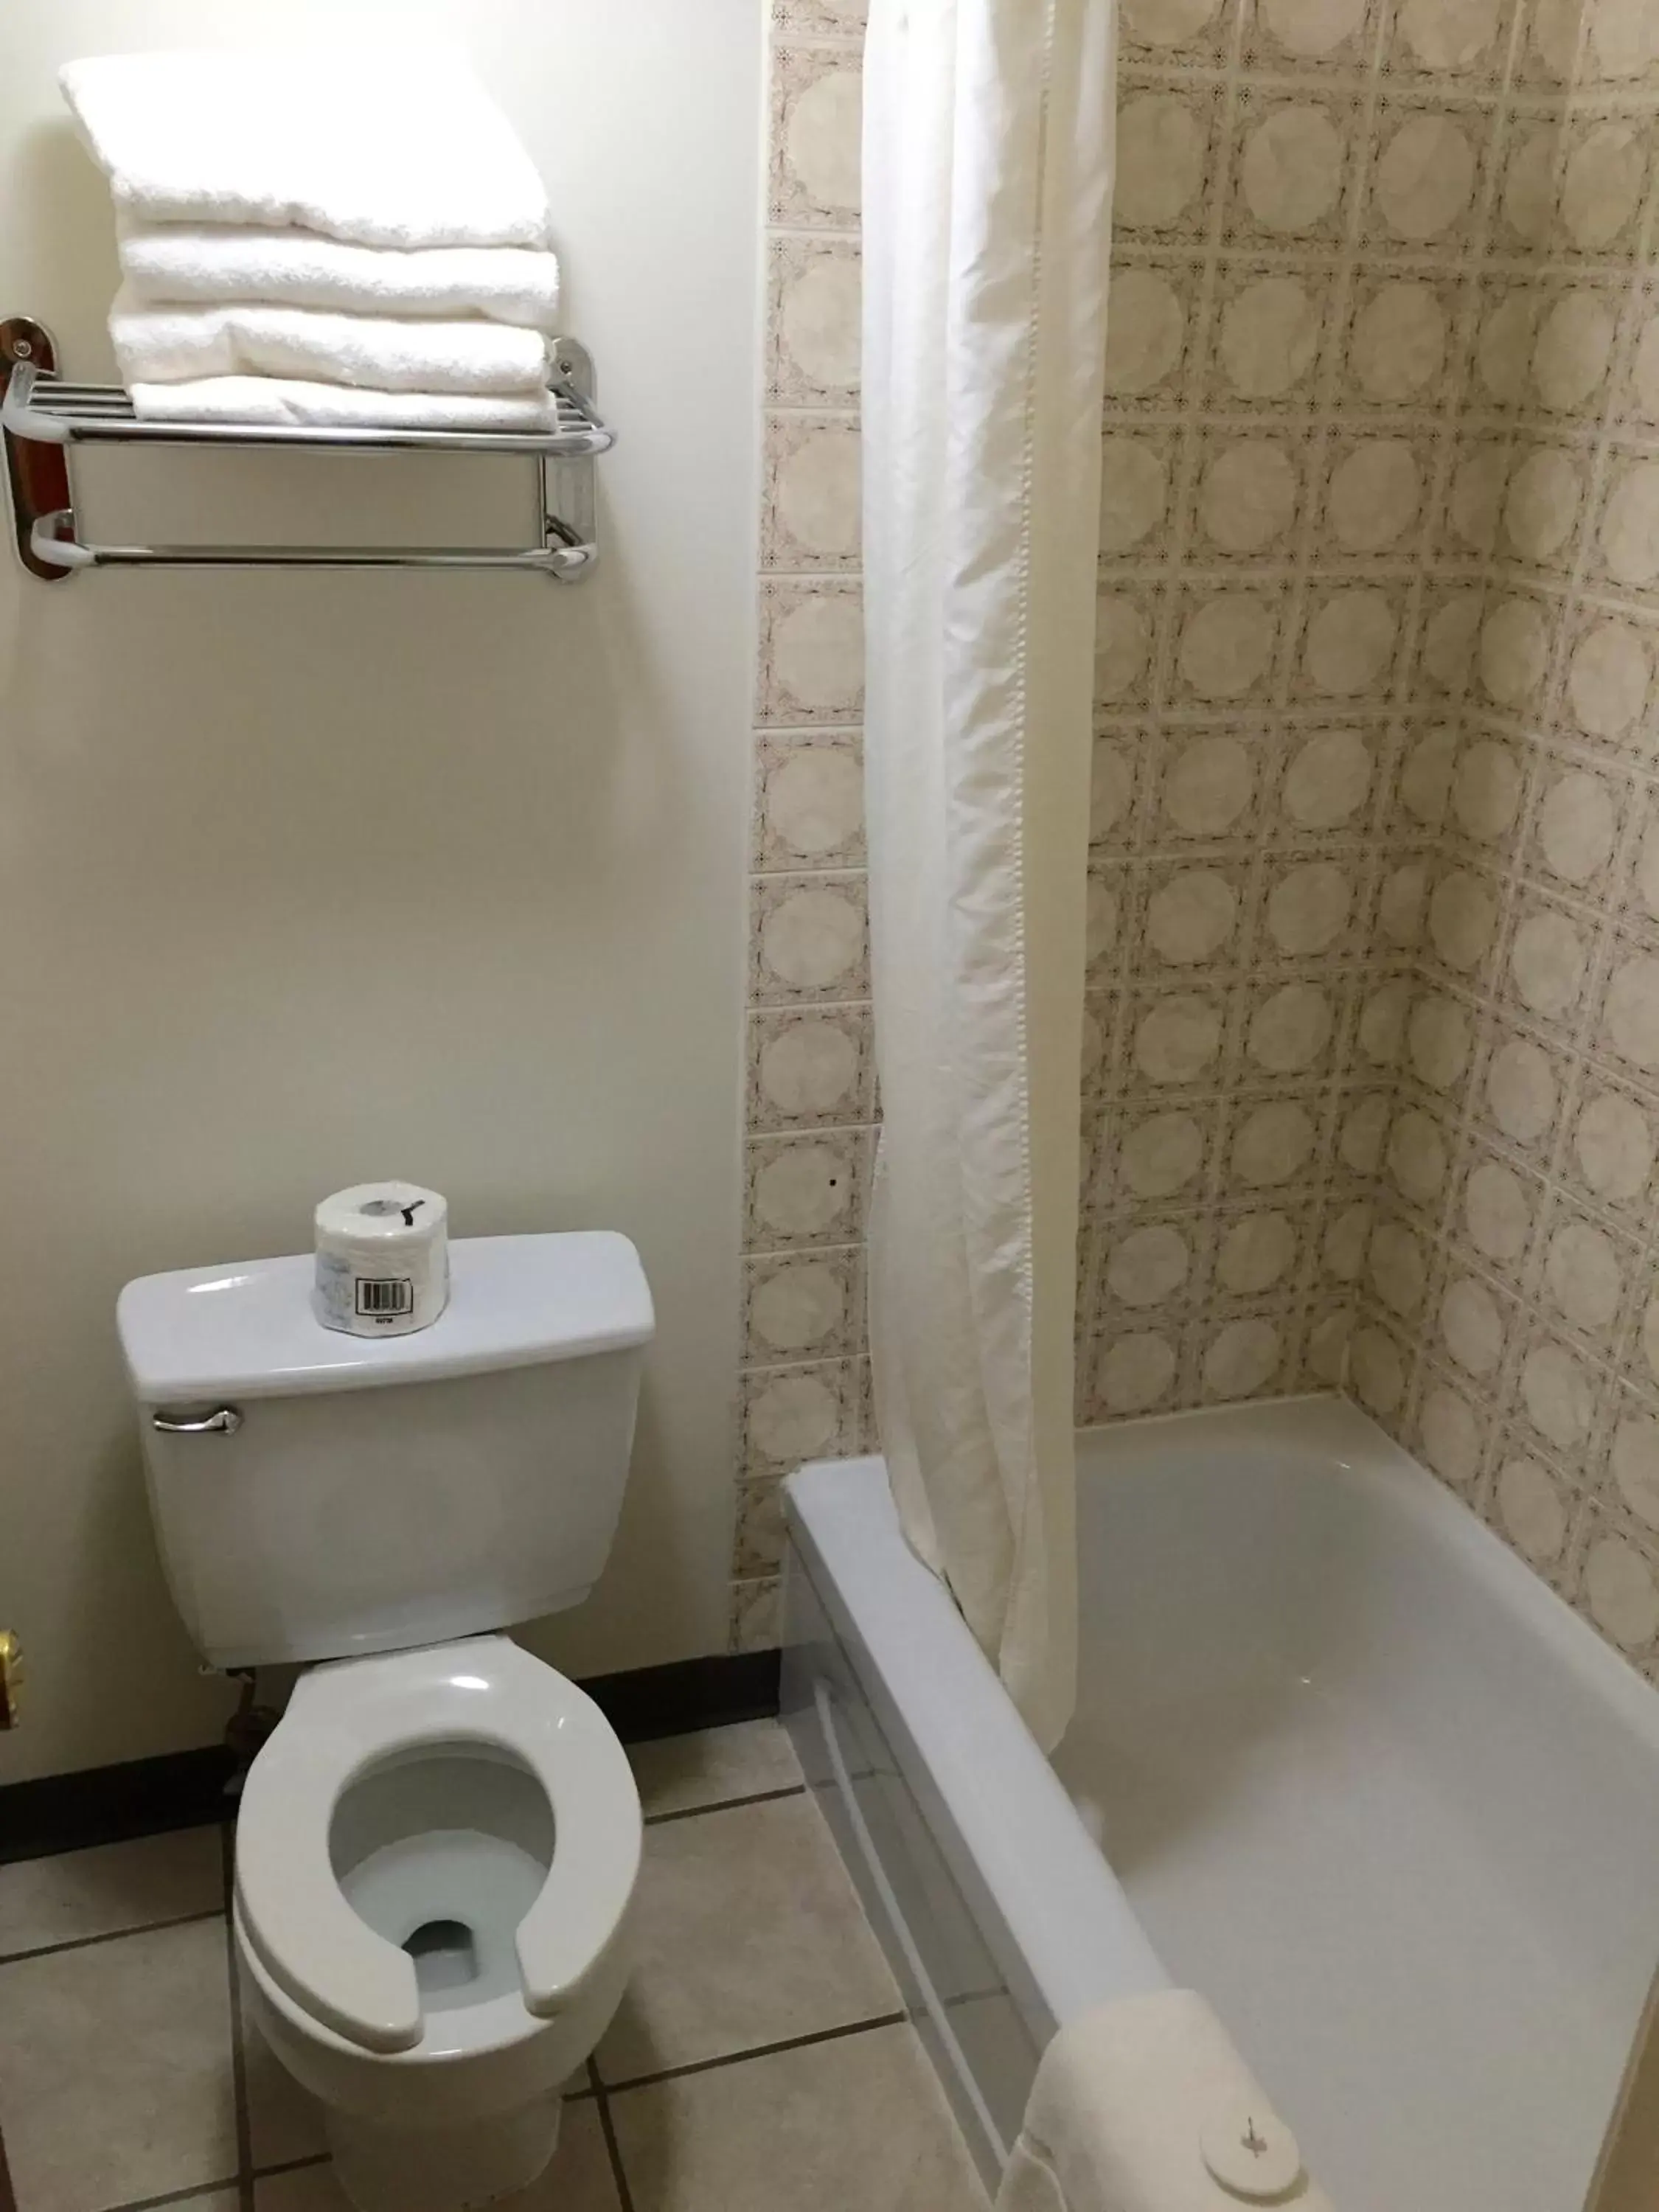 Toilet, Bathroom in Colonial Inn